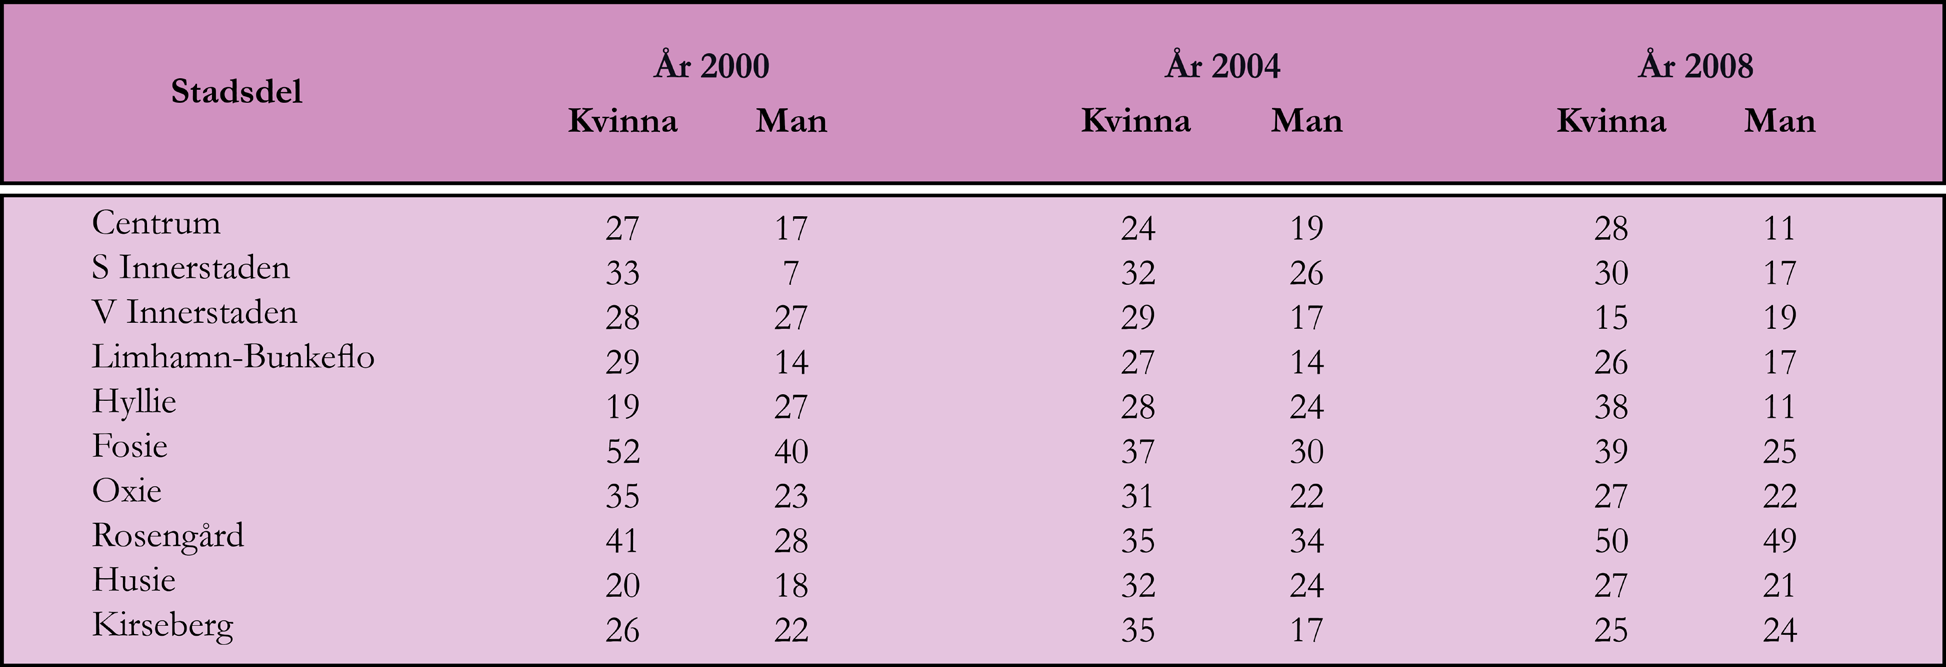 Bland personer födda i Sverige var andelen med låg tillit lägre än bland personer födda utomlands.